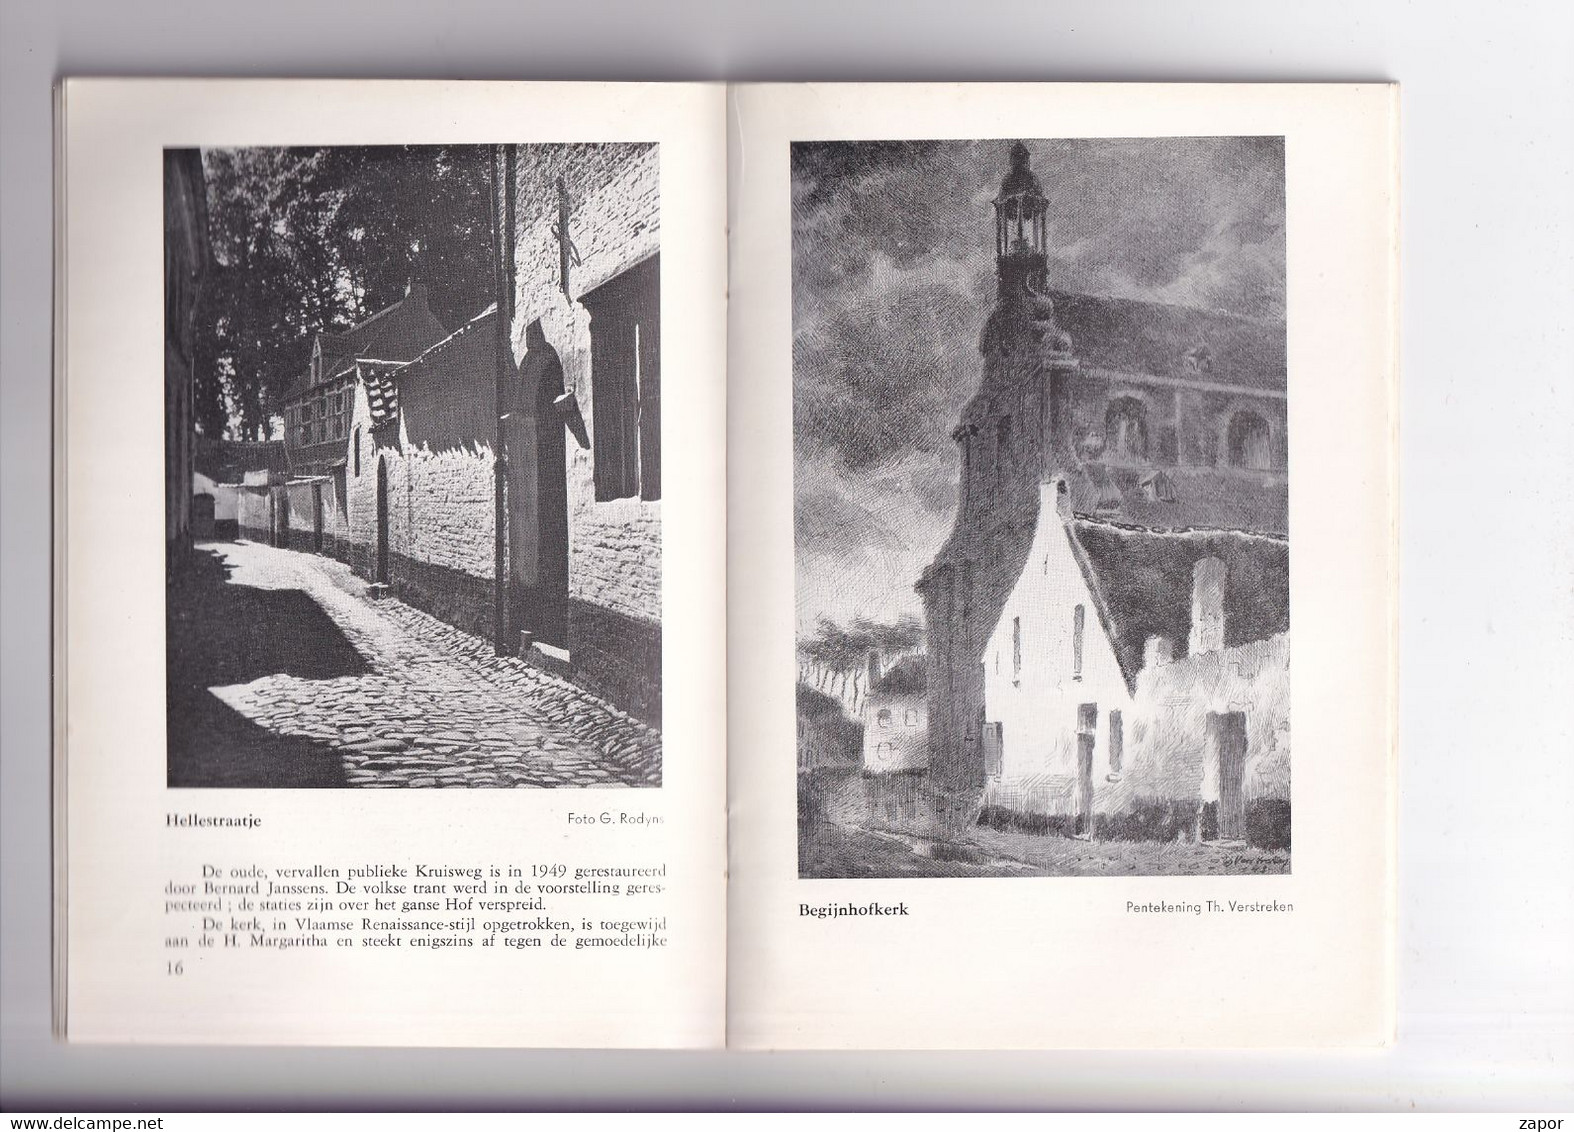 Lier - Gids Voor De Toerist - Boekje Van 36p - 1950 - Frans Verstreken - Turismo